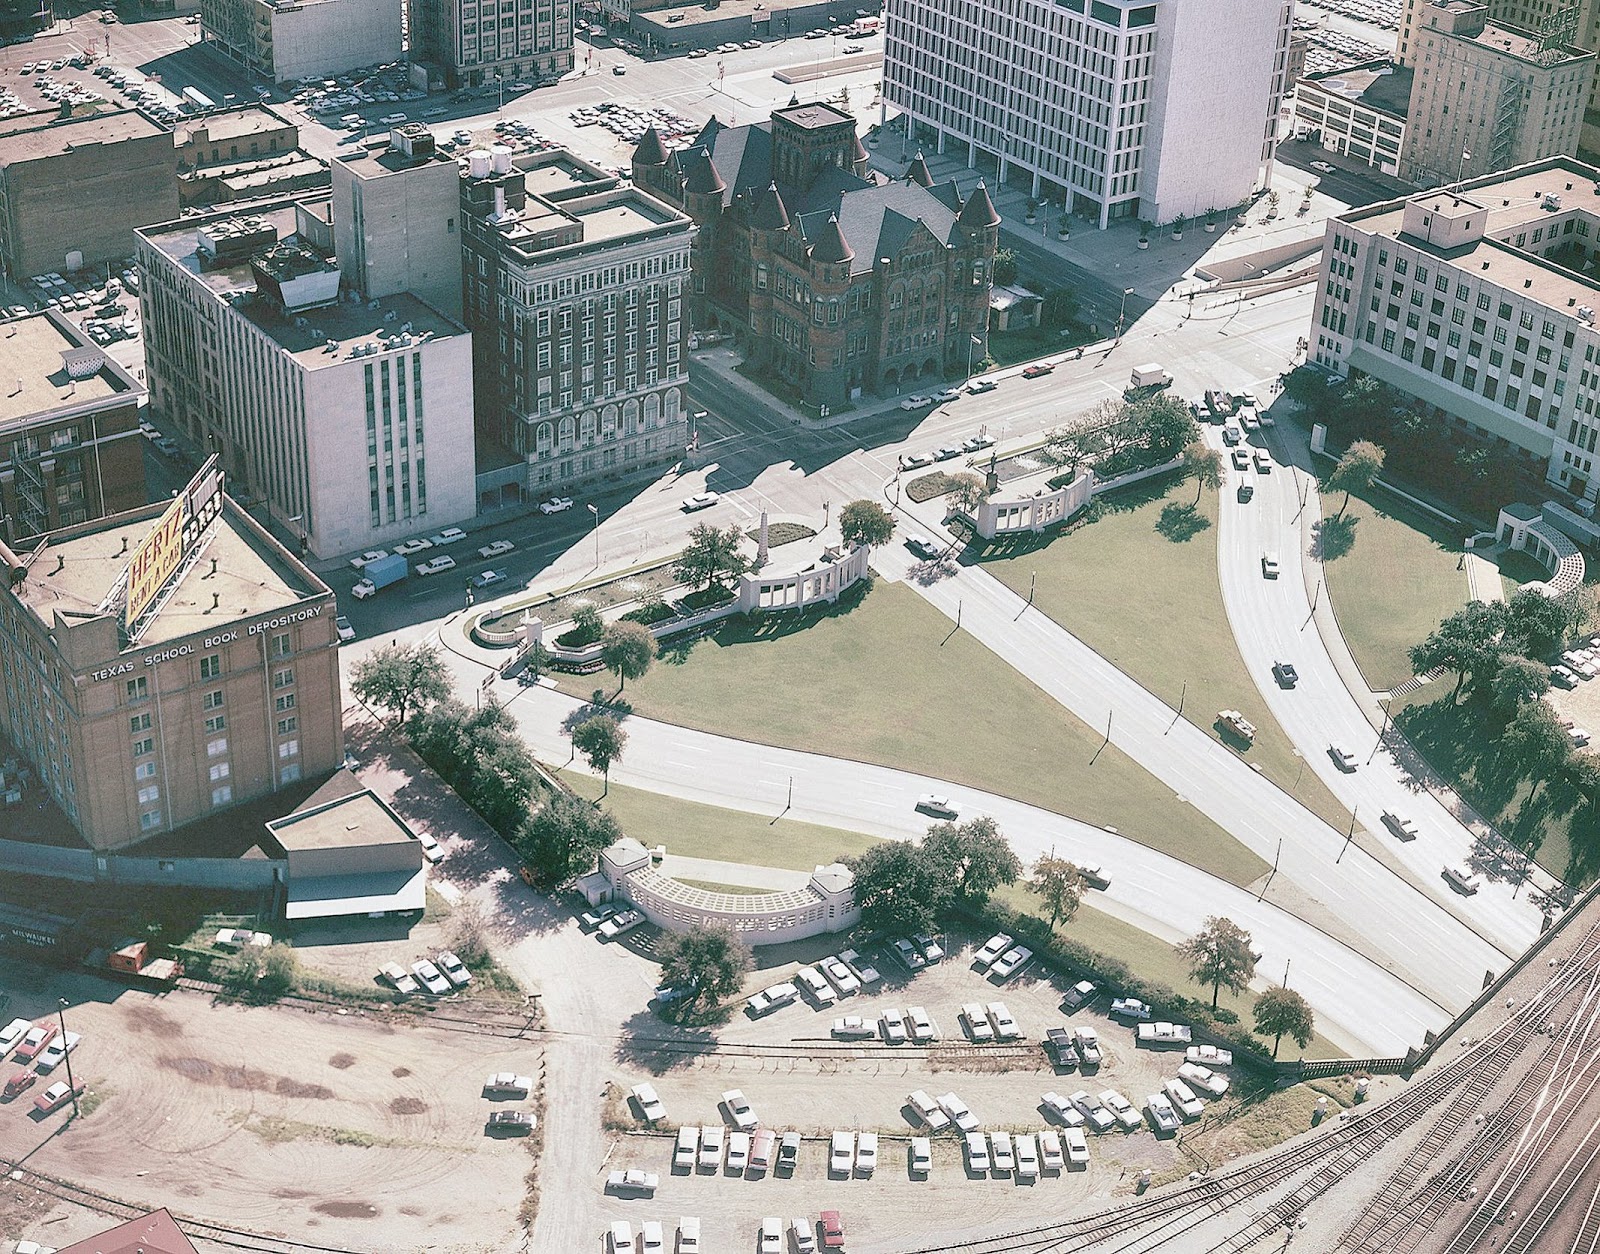 Dealey-Plaza-Dallas-Texas-Circa-1967.jpg